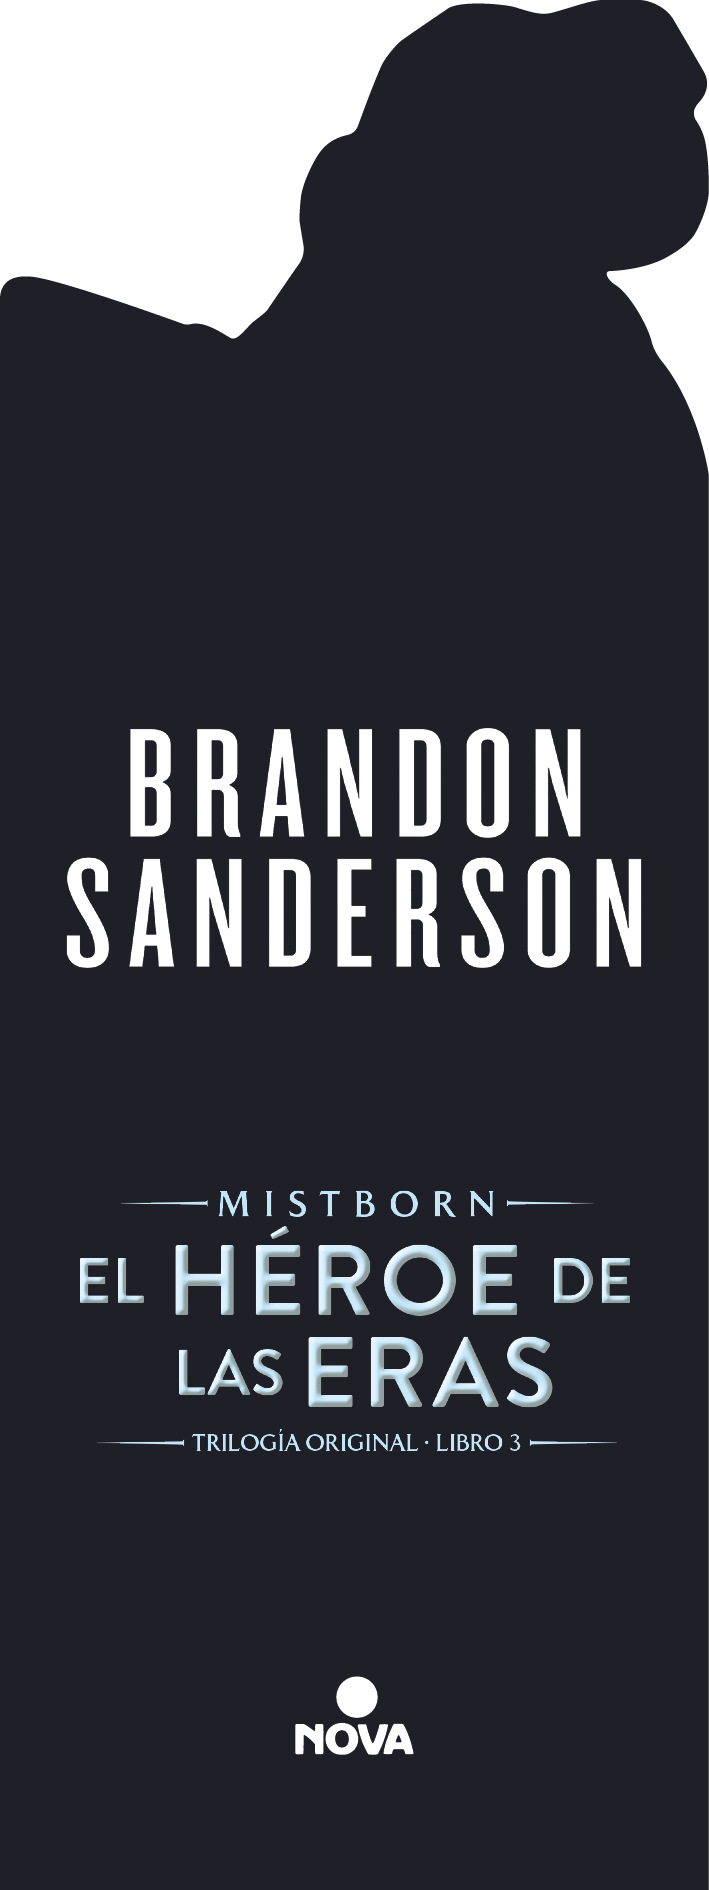 Libro El Héroe De Las Eras - Brandon Sanderson - Tomo 3